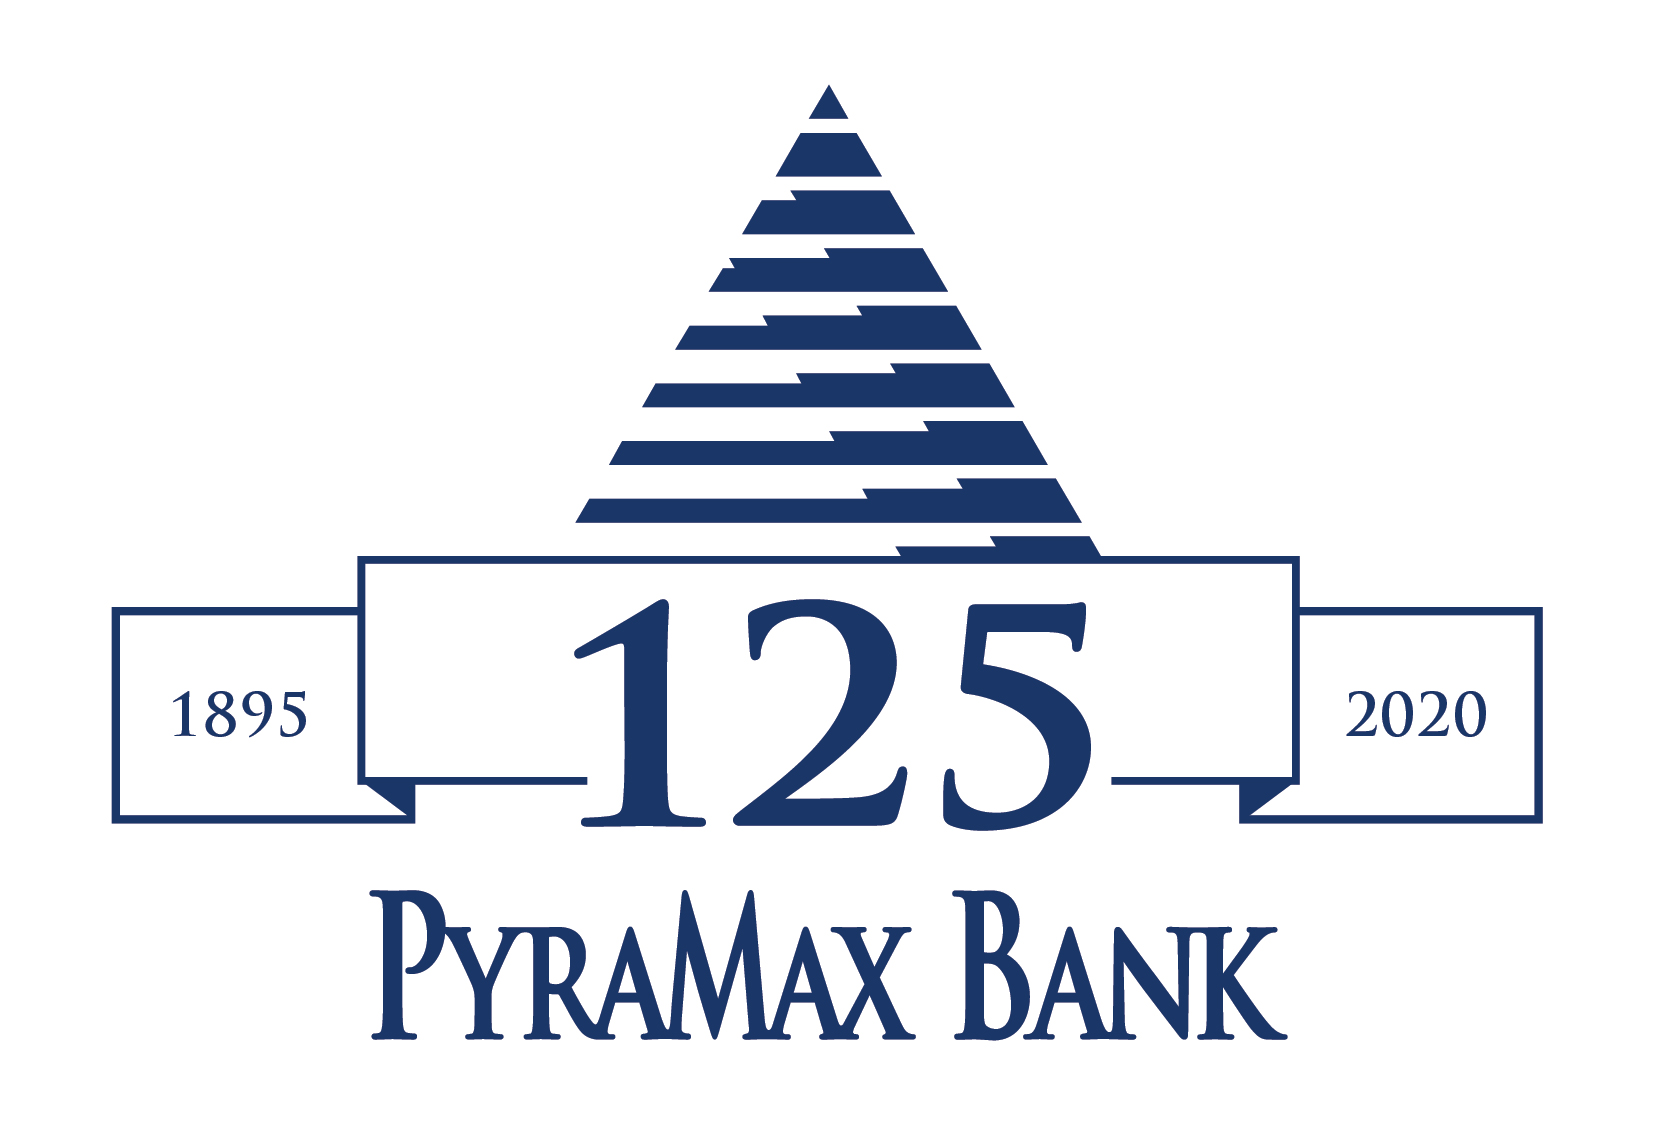 PyraMax Bank logo